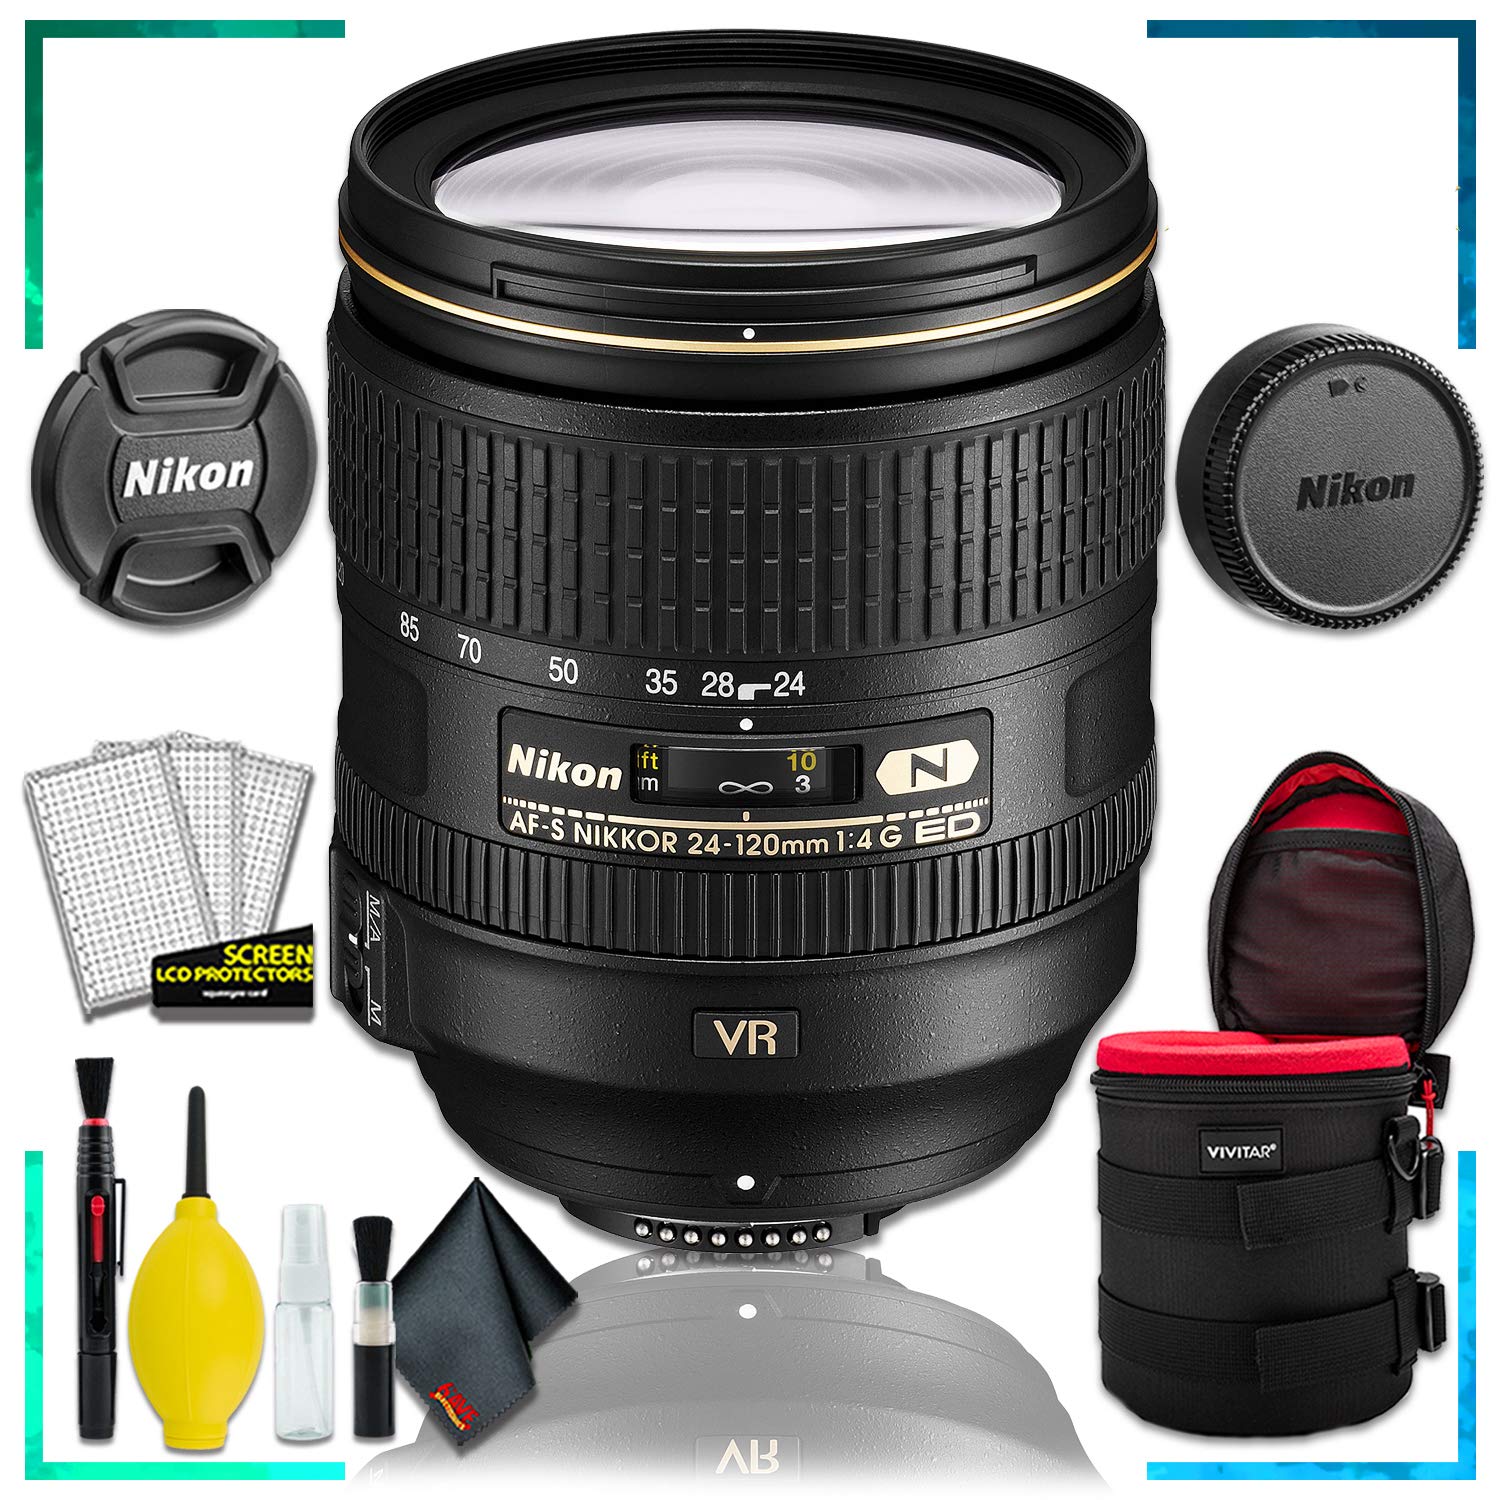 Nikon AF-S NIKKOR 24-120mm f.4G ED VR Lens (Intl Model) + 4.5 inch Vivitar Premium Lens Case + Cleaning Kit